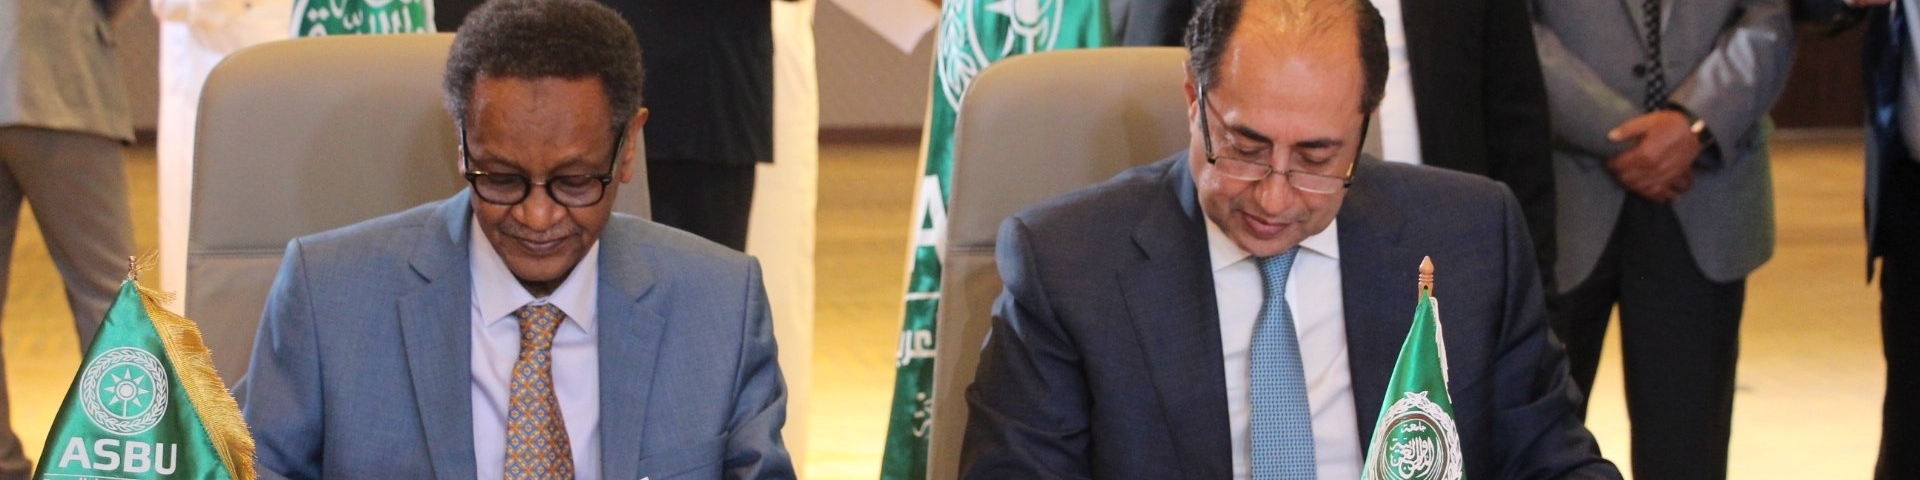 توقيع مذكرة تفاهم بين جامعة الدول العربية واتحاد اذاعات الدول العربية 